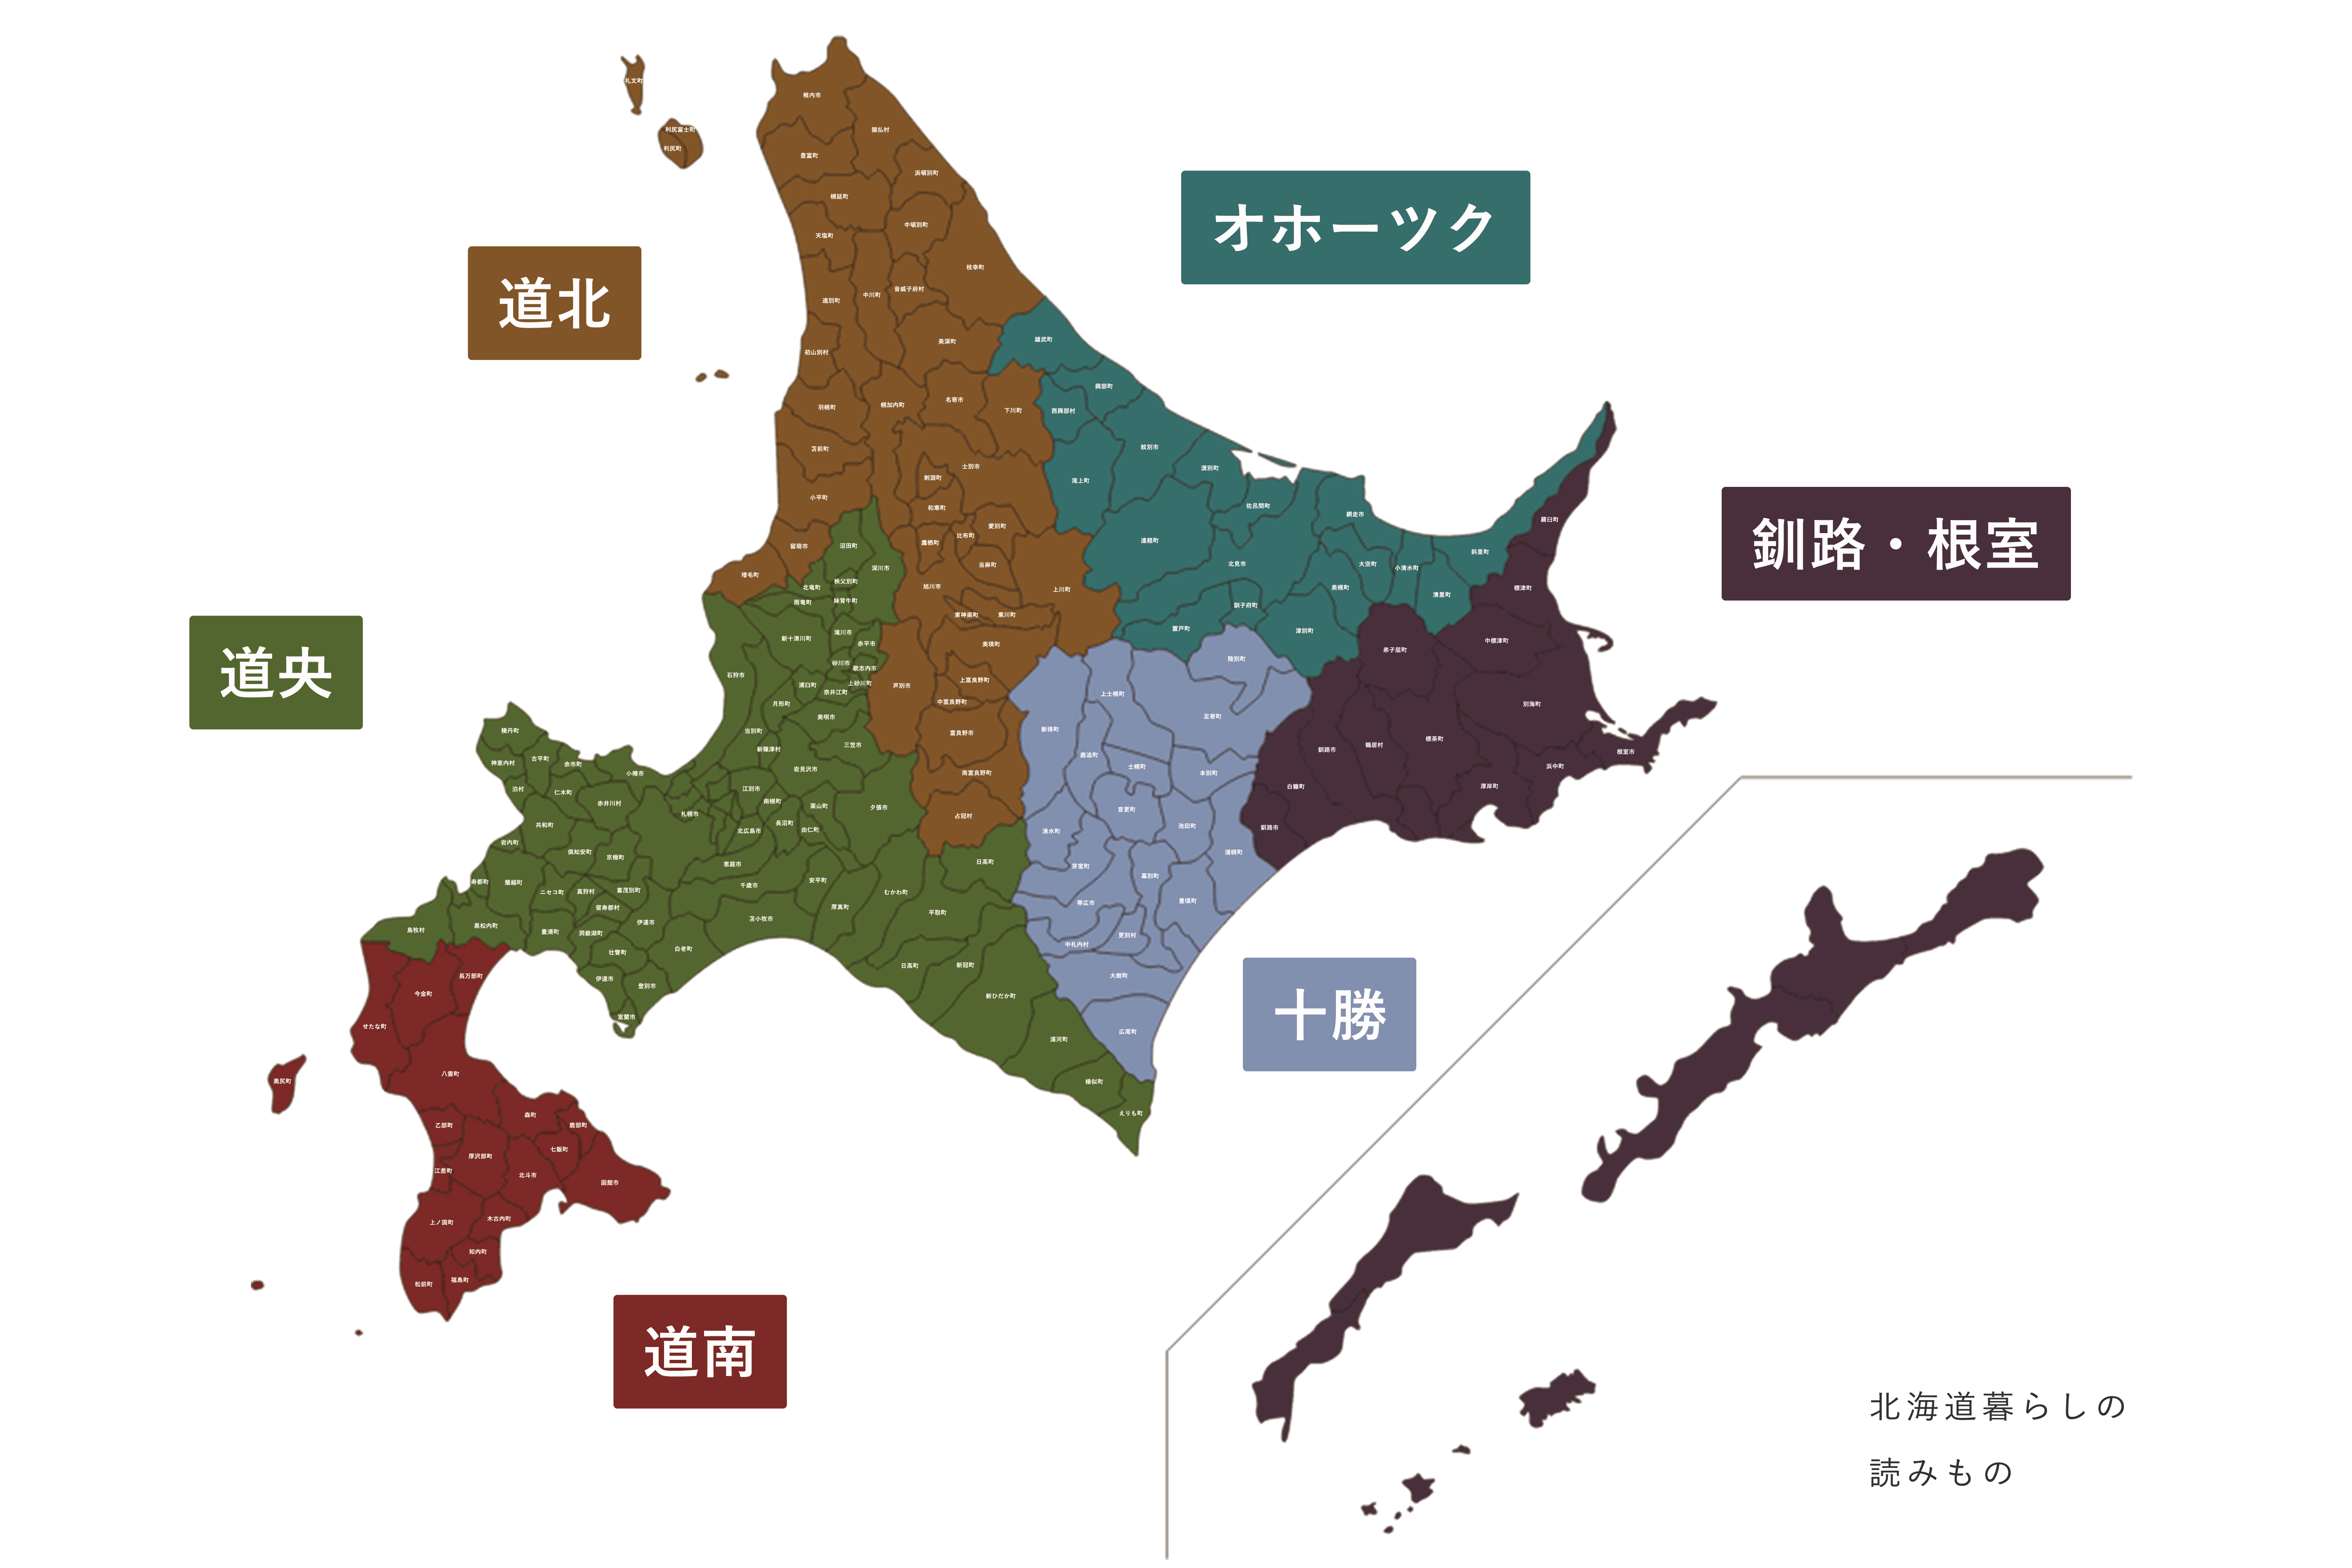 北海道179市町村のエリア区分「道央、道南、道北、十勝、オホーツク、釧路・根室」の地図